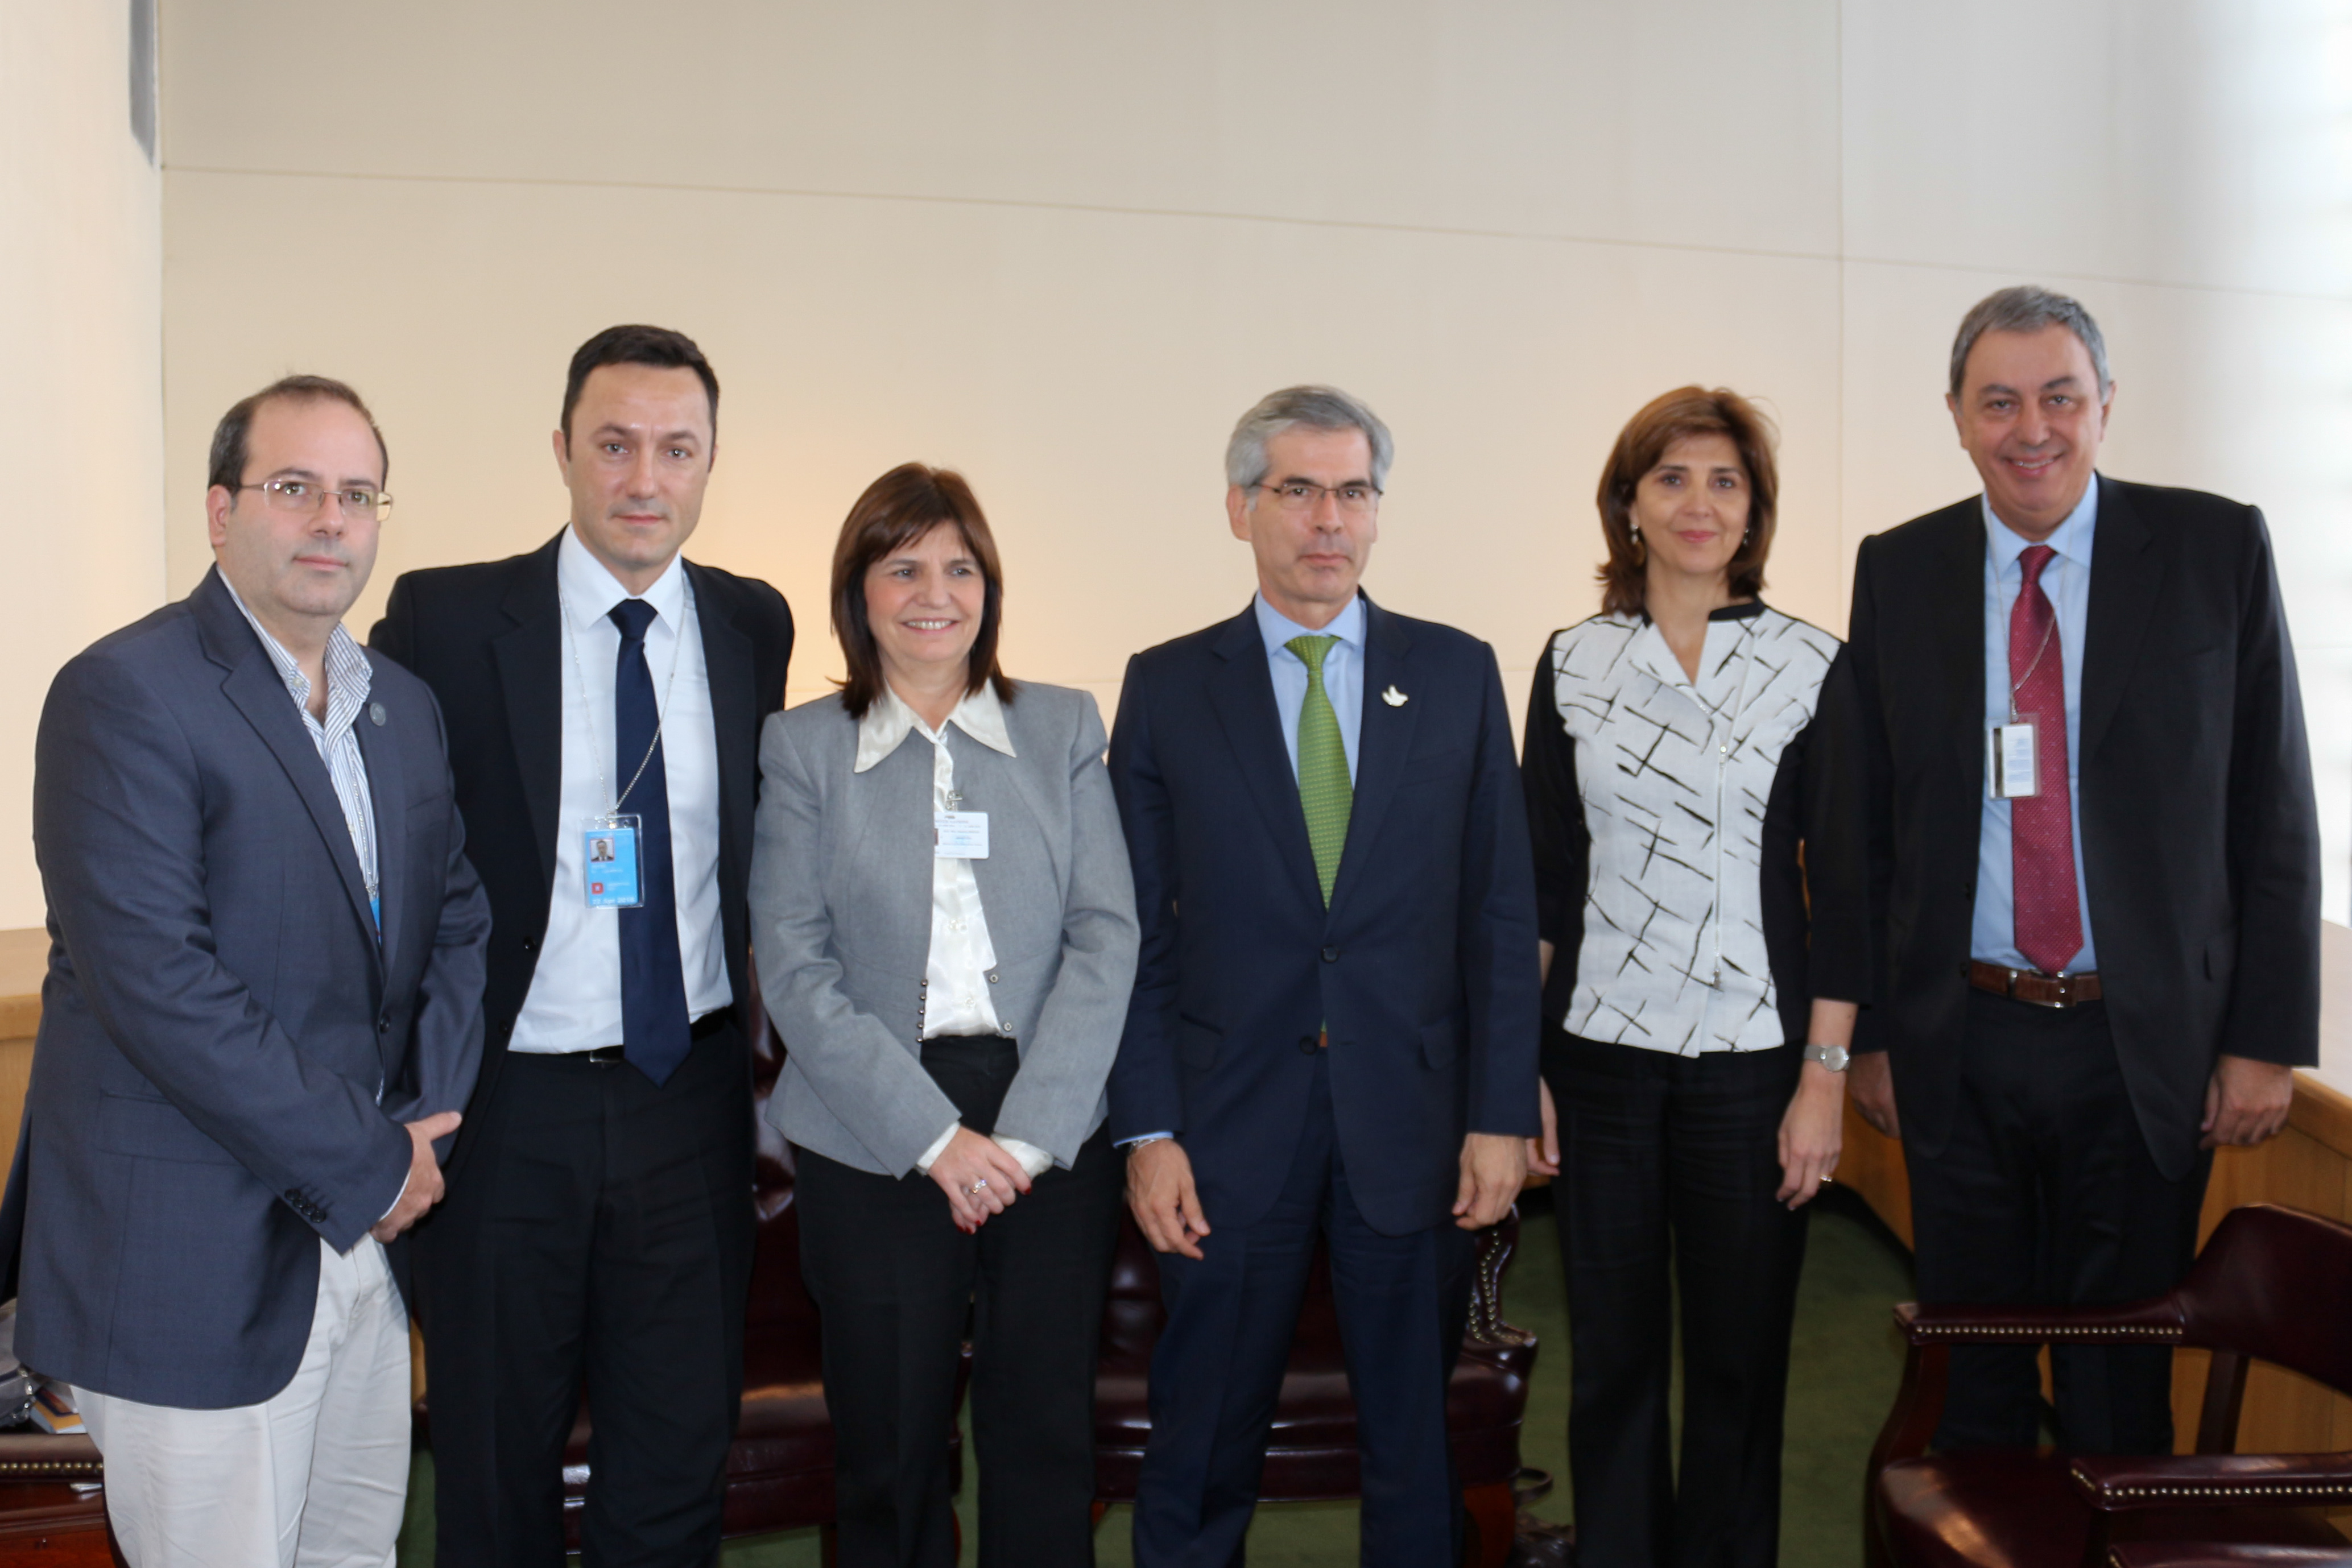 Canciller María Ángela Holguín y Ministro de Justicia, Yesid Reyes Alvarado, sostuvieron una reunión bilateral con Patricia Bulrich, la Ministra de Seguridad de Argentina